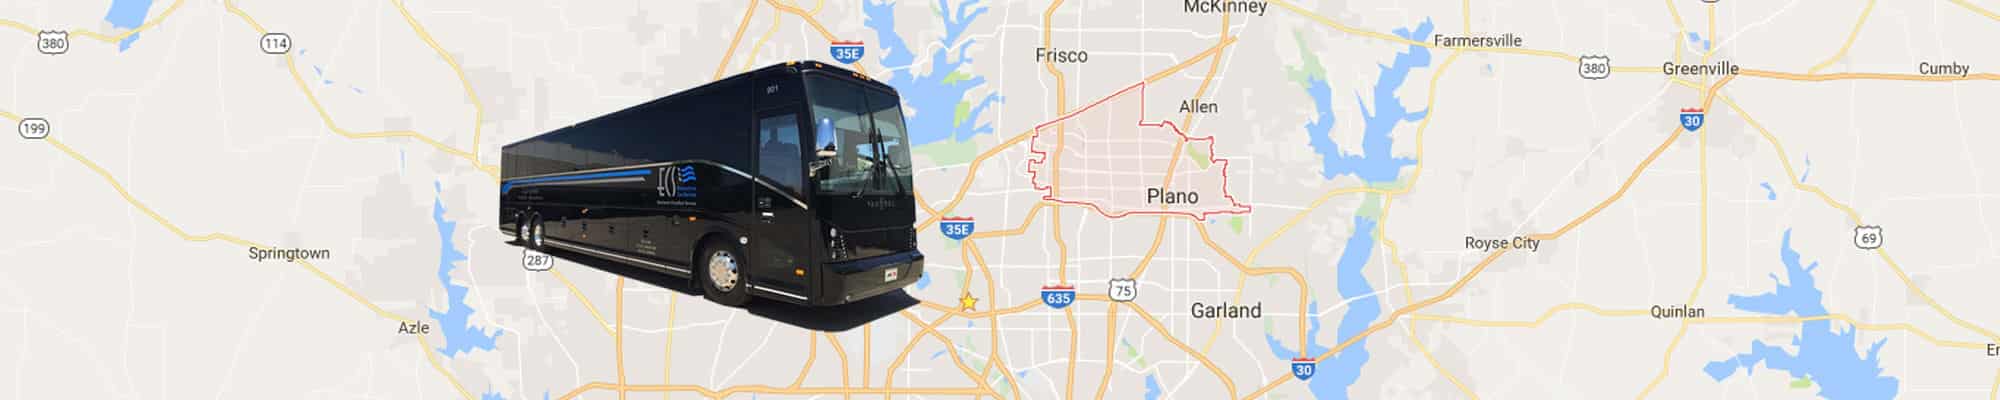 Premium Tour Bus Rentals, Trusted Tour Bus Company in DC